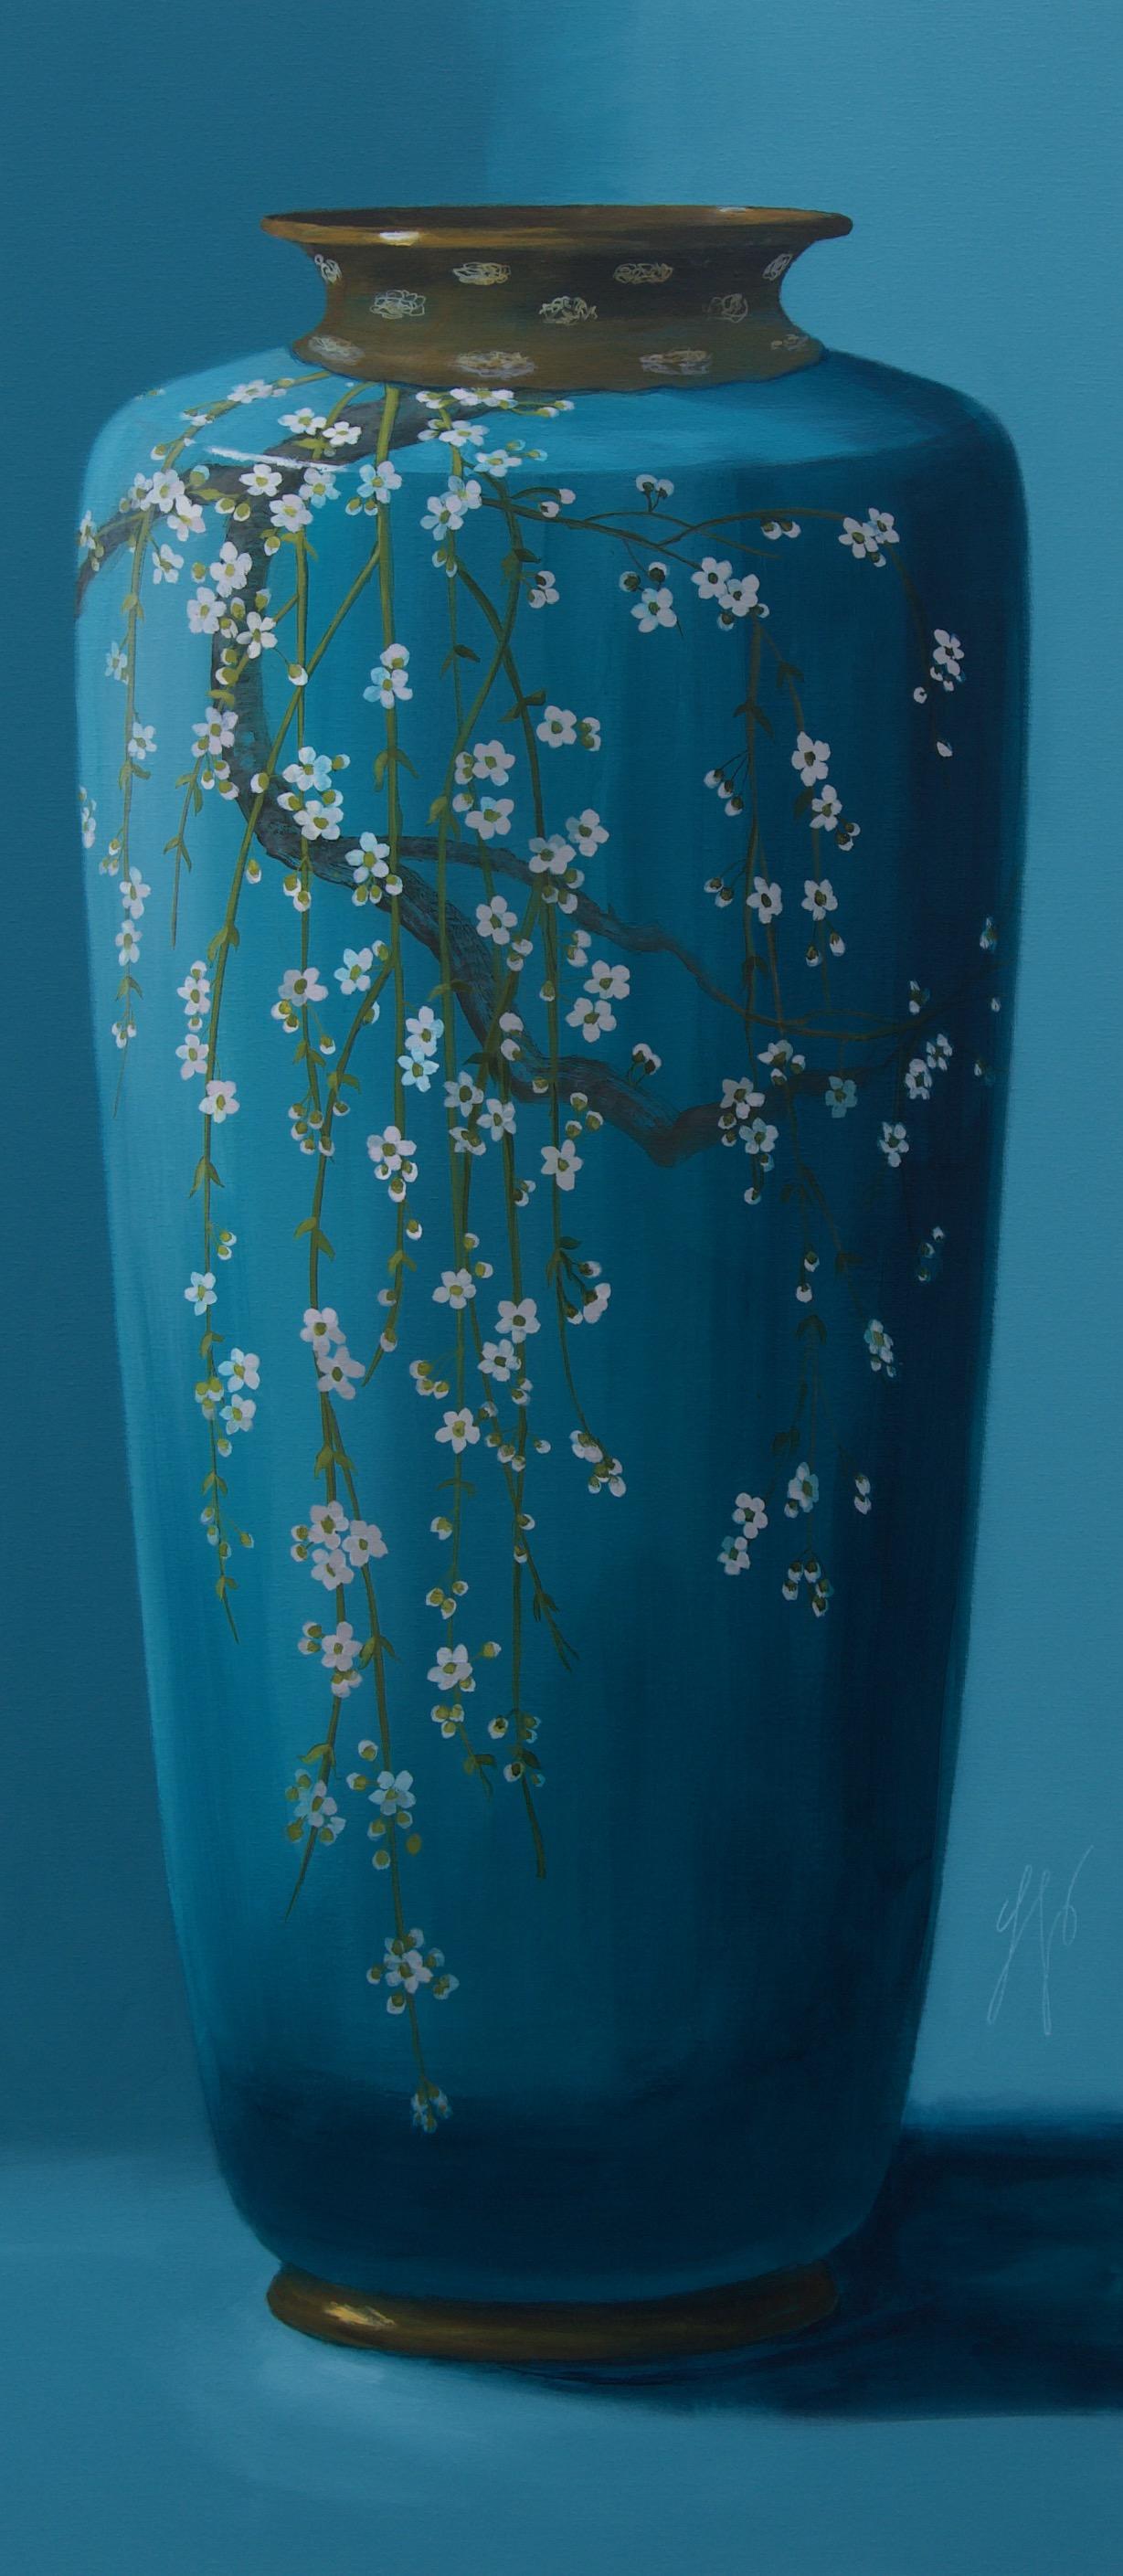 Sasja Wagenaar Figurative Painting – Türkisfarbene Vase", Niederländisches Contemporary Still Life Gemälde einer Porzellanvase